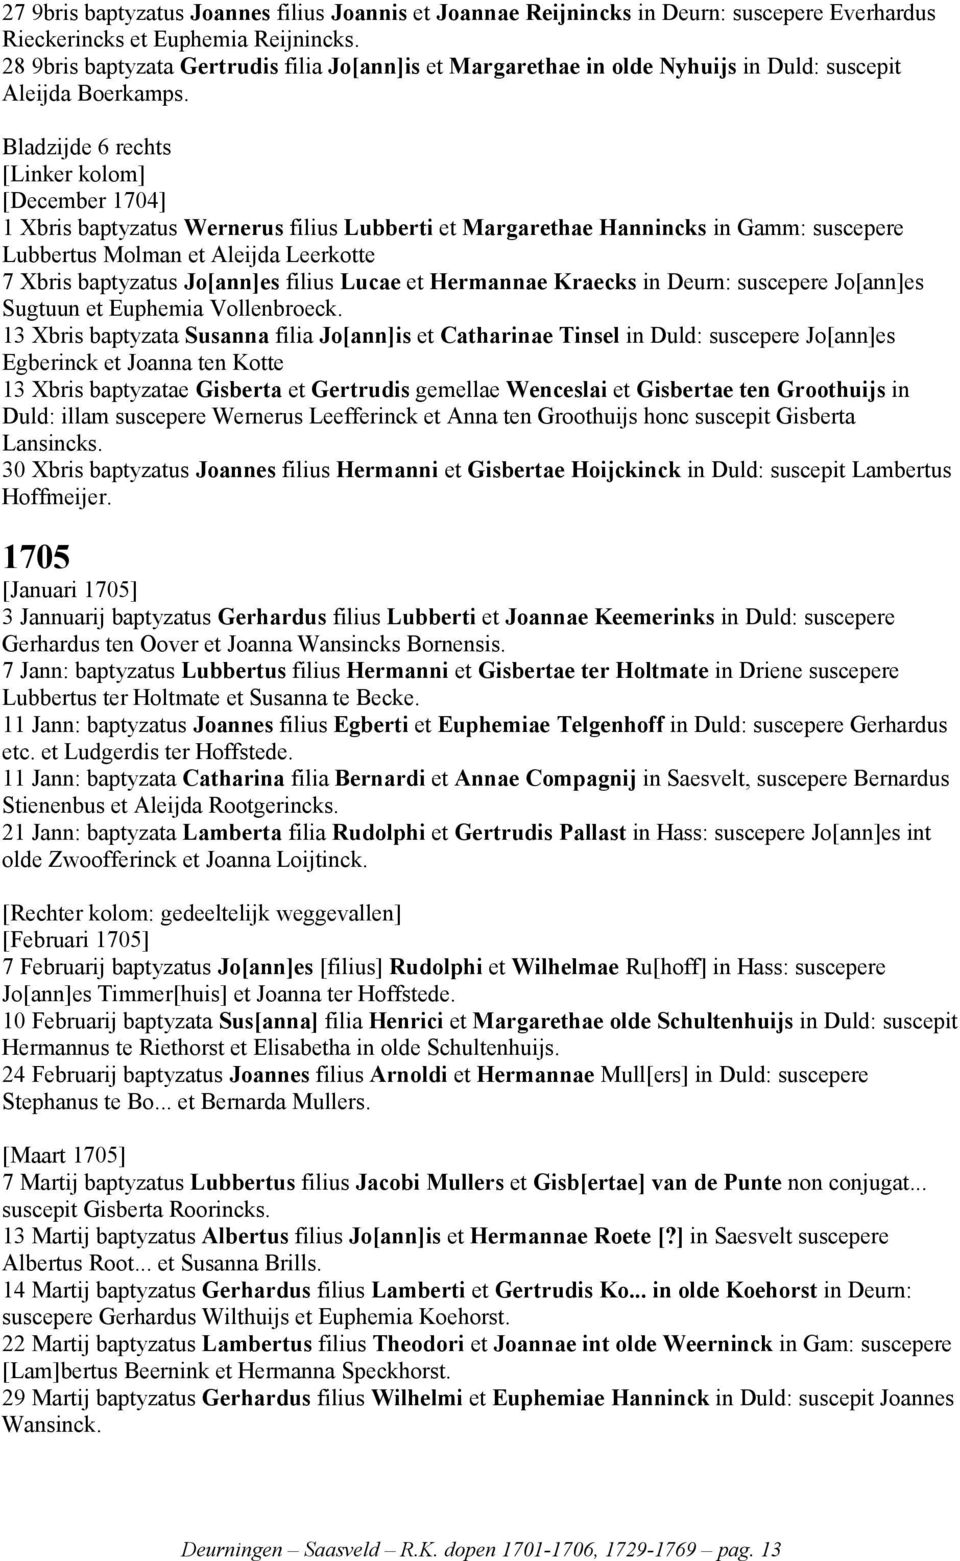 Bladzijde 6 rechts [December 1704] 1 Xbris baptyzatus Wernerus filius Lubberti et Margarethae Hannincks in Gamm: suscepere Lubbertus Molman et Aleijda Leerkotte 7 Xbris baptyzatus Jo[ann]es filius